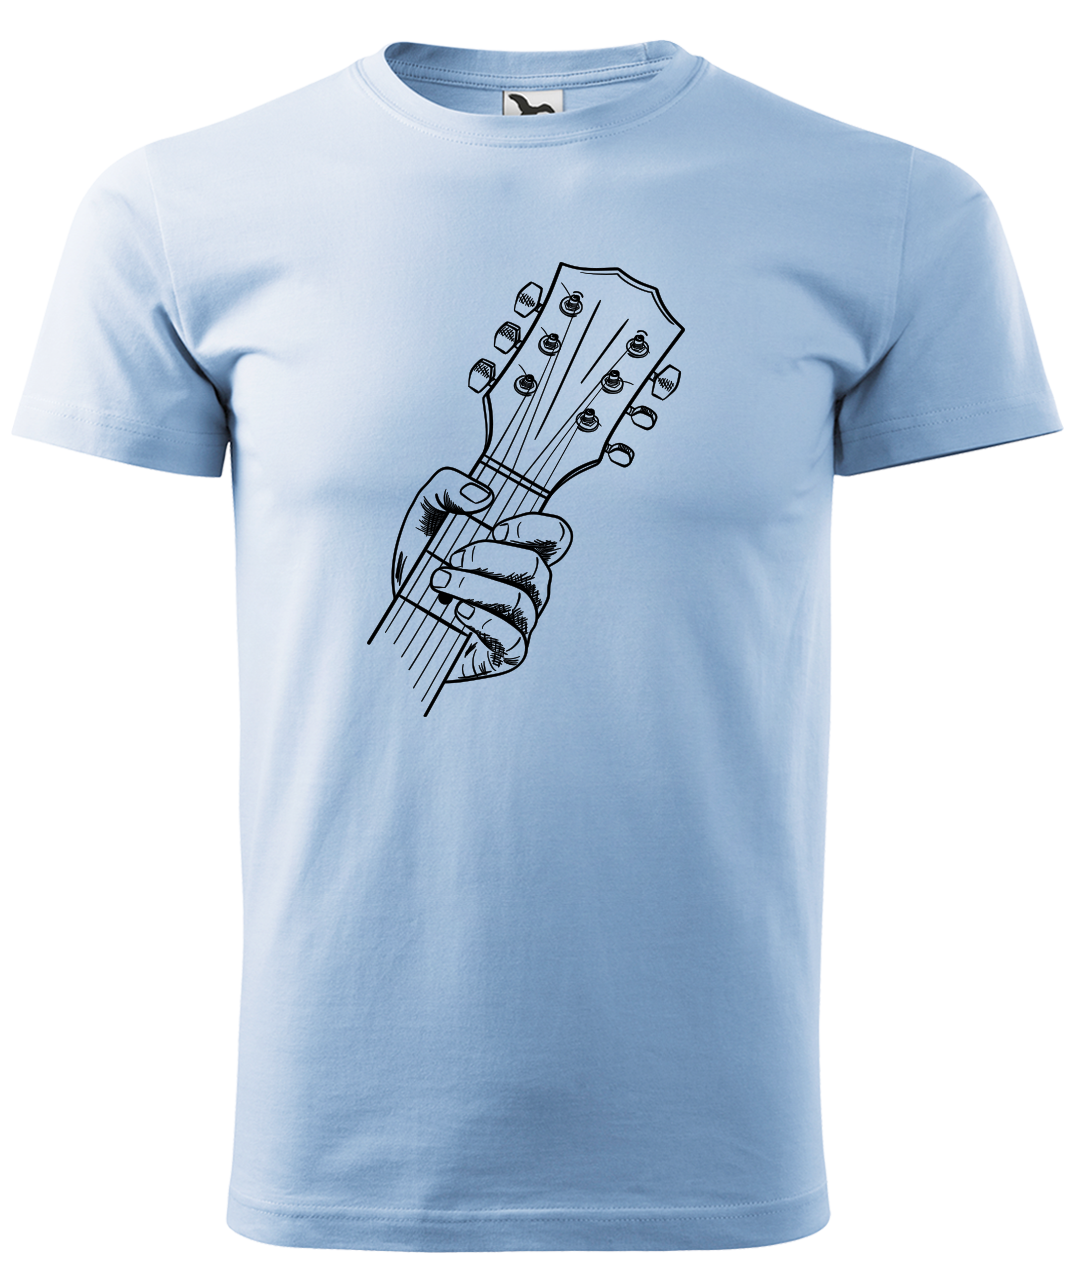 Dětské tričko s kytarou - Hlava kytary Velikost: 8 let / 134 cm, Barva: Nebesky modrá (15)